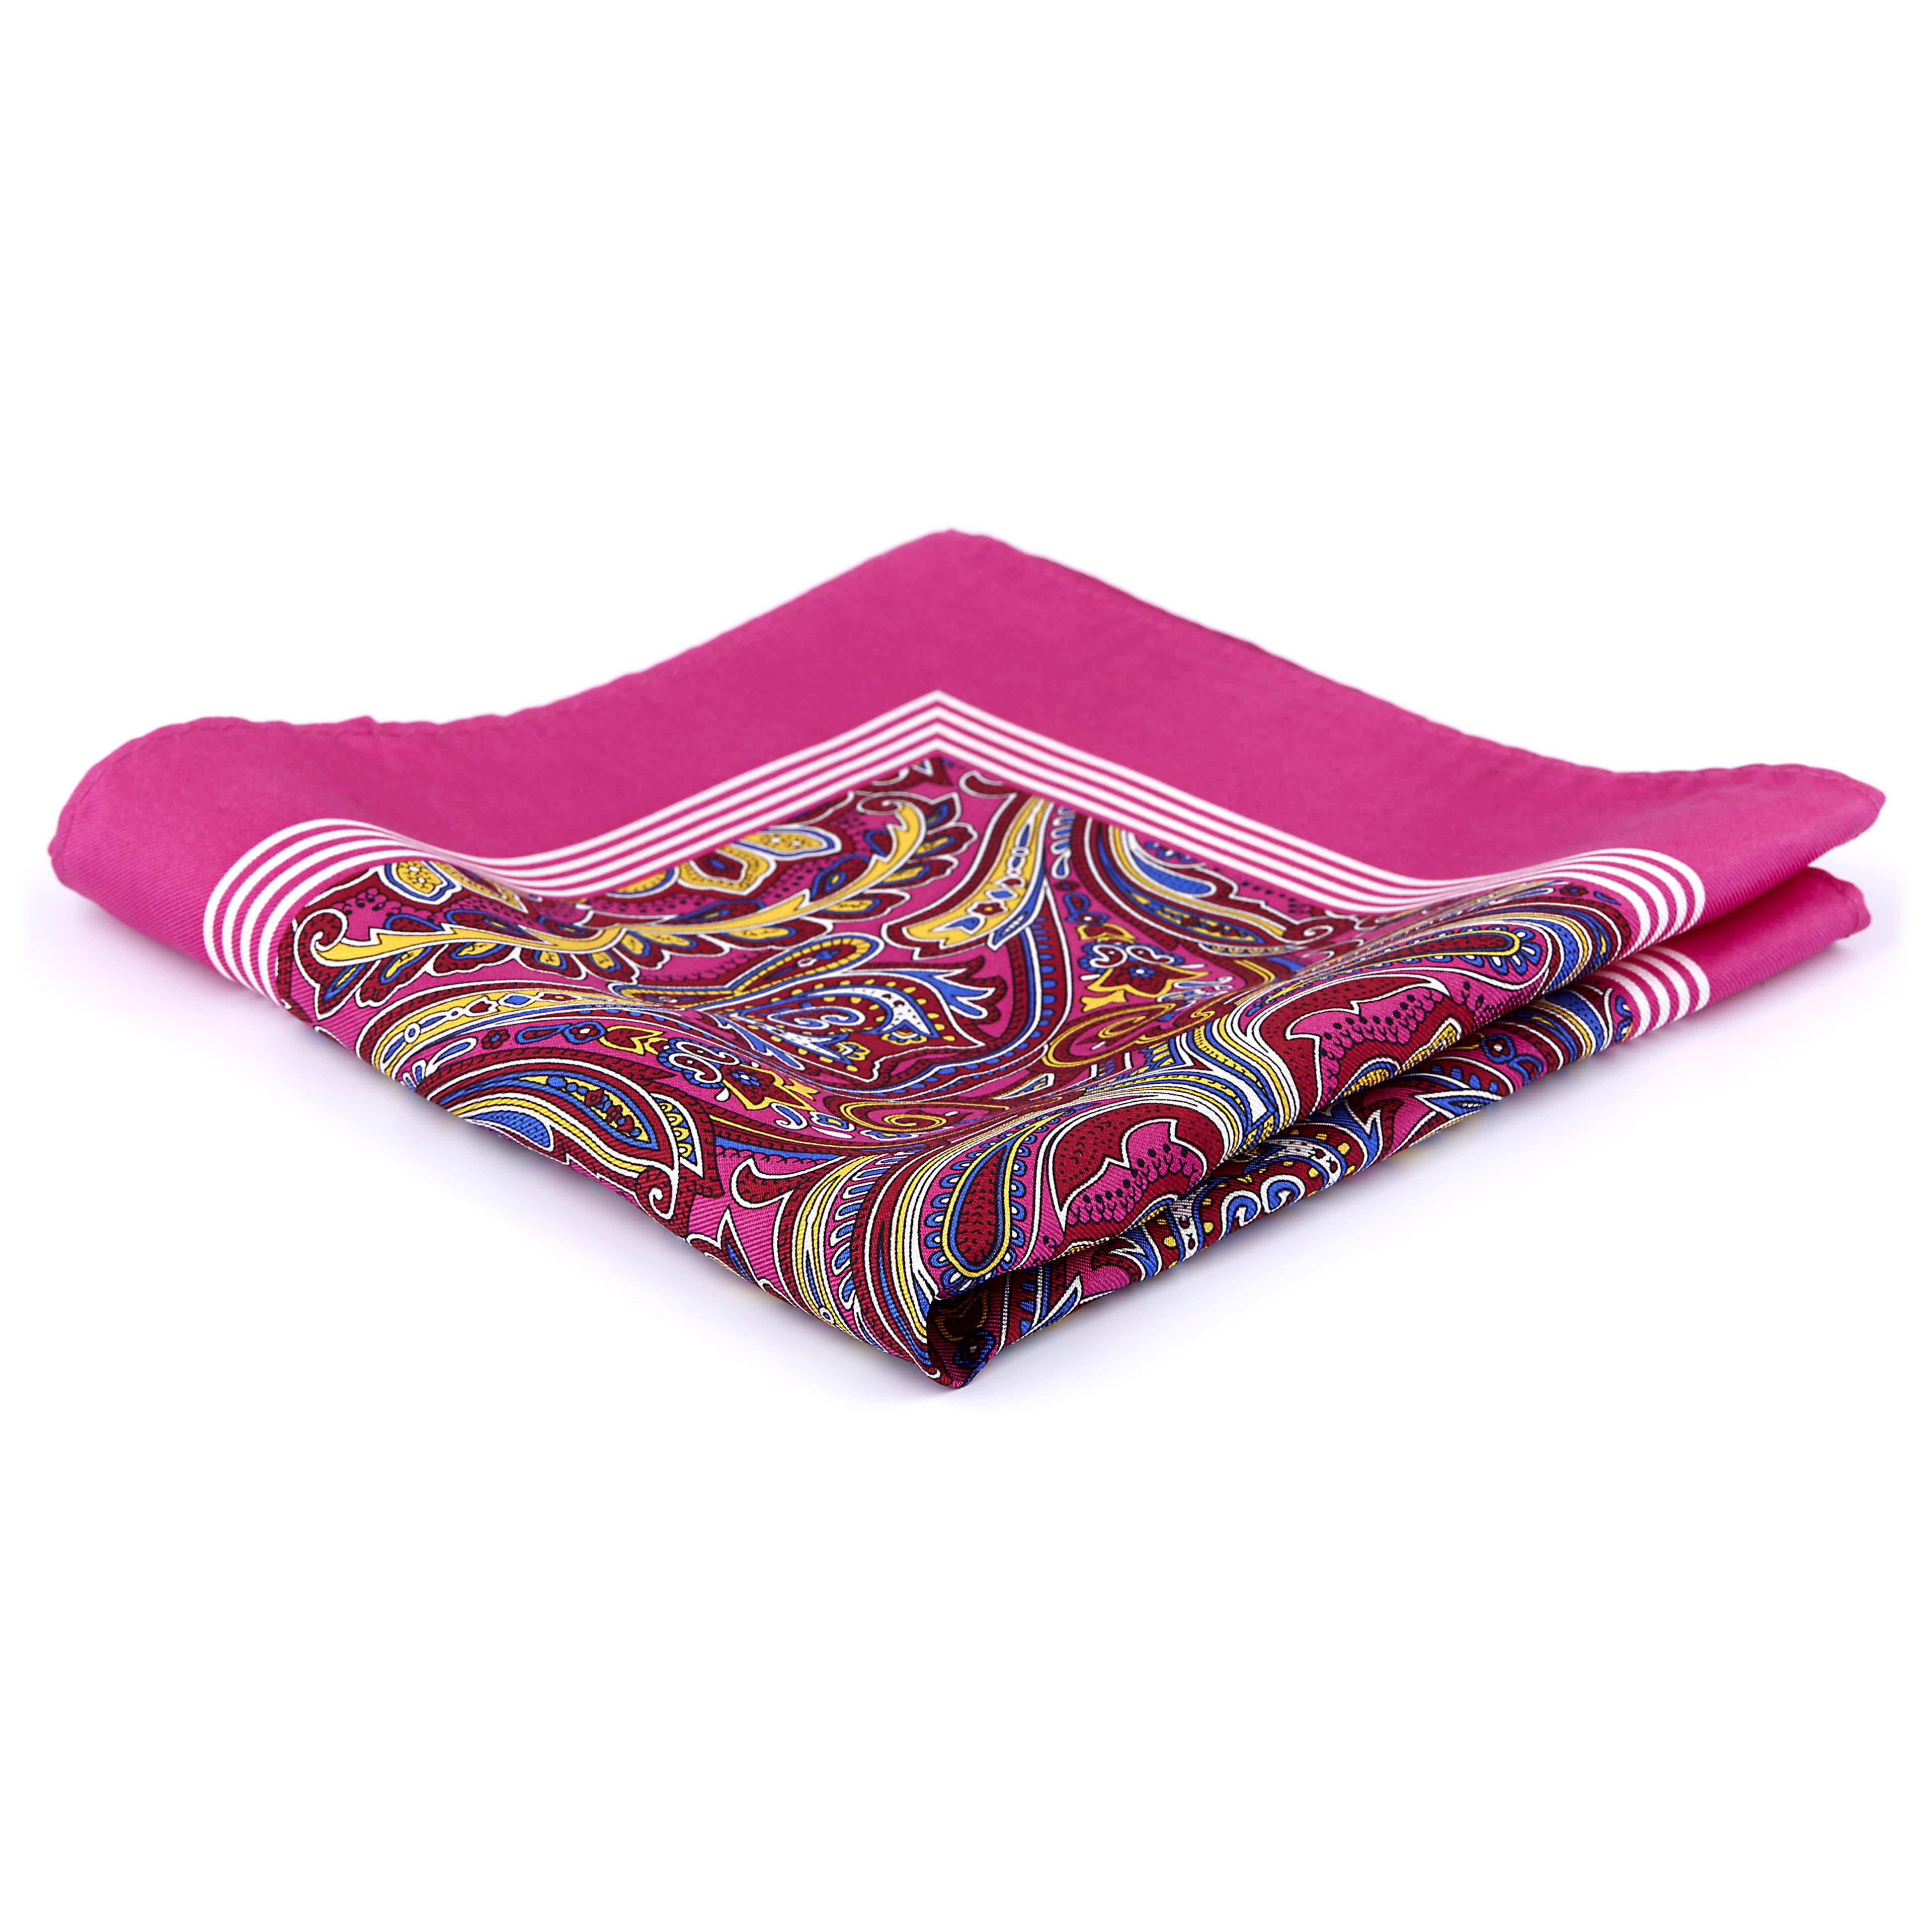 Neon Pink & Vibrant Floral Design Silk Pocket Square